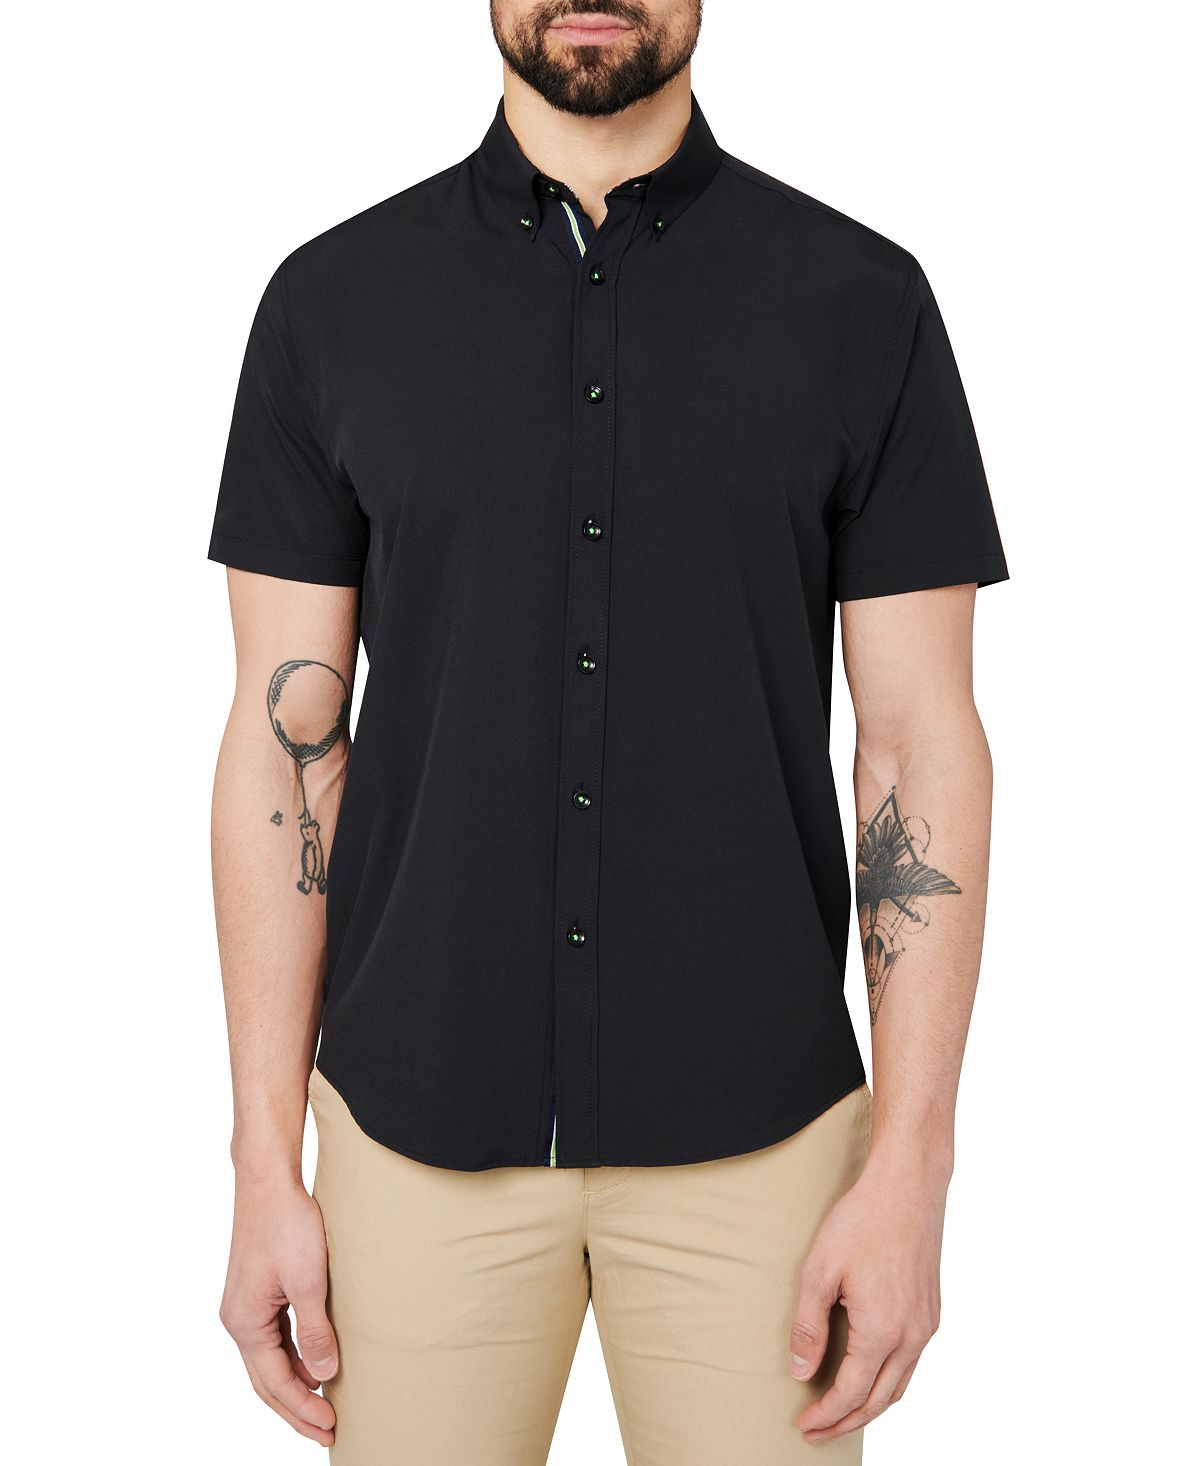 Мужская приталенная рубашка черного цвета на пуговицах Society of Threads, черный цена и фото